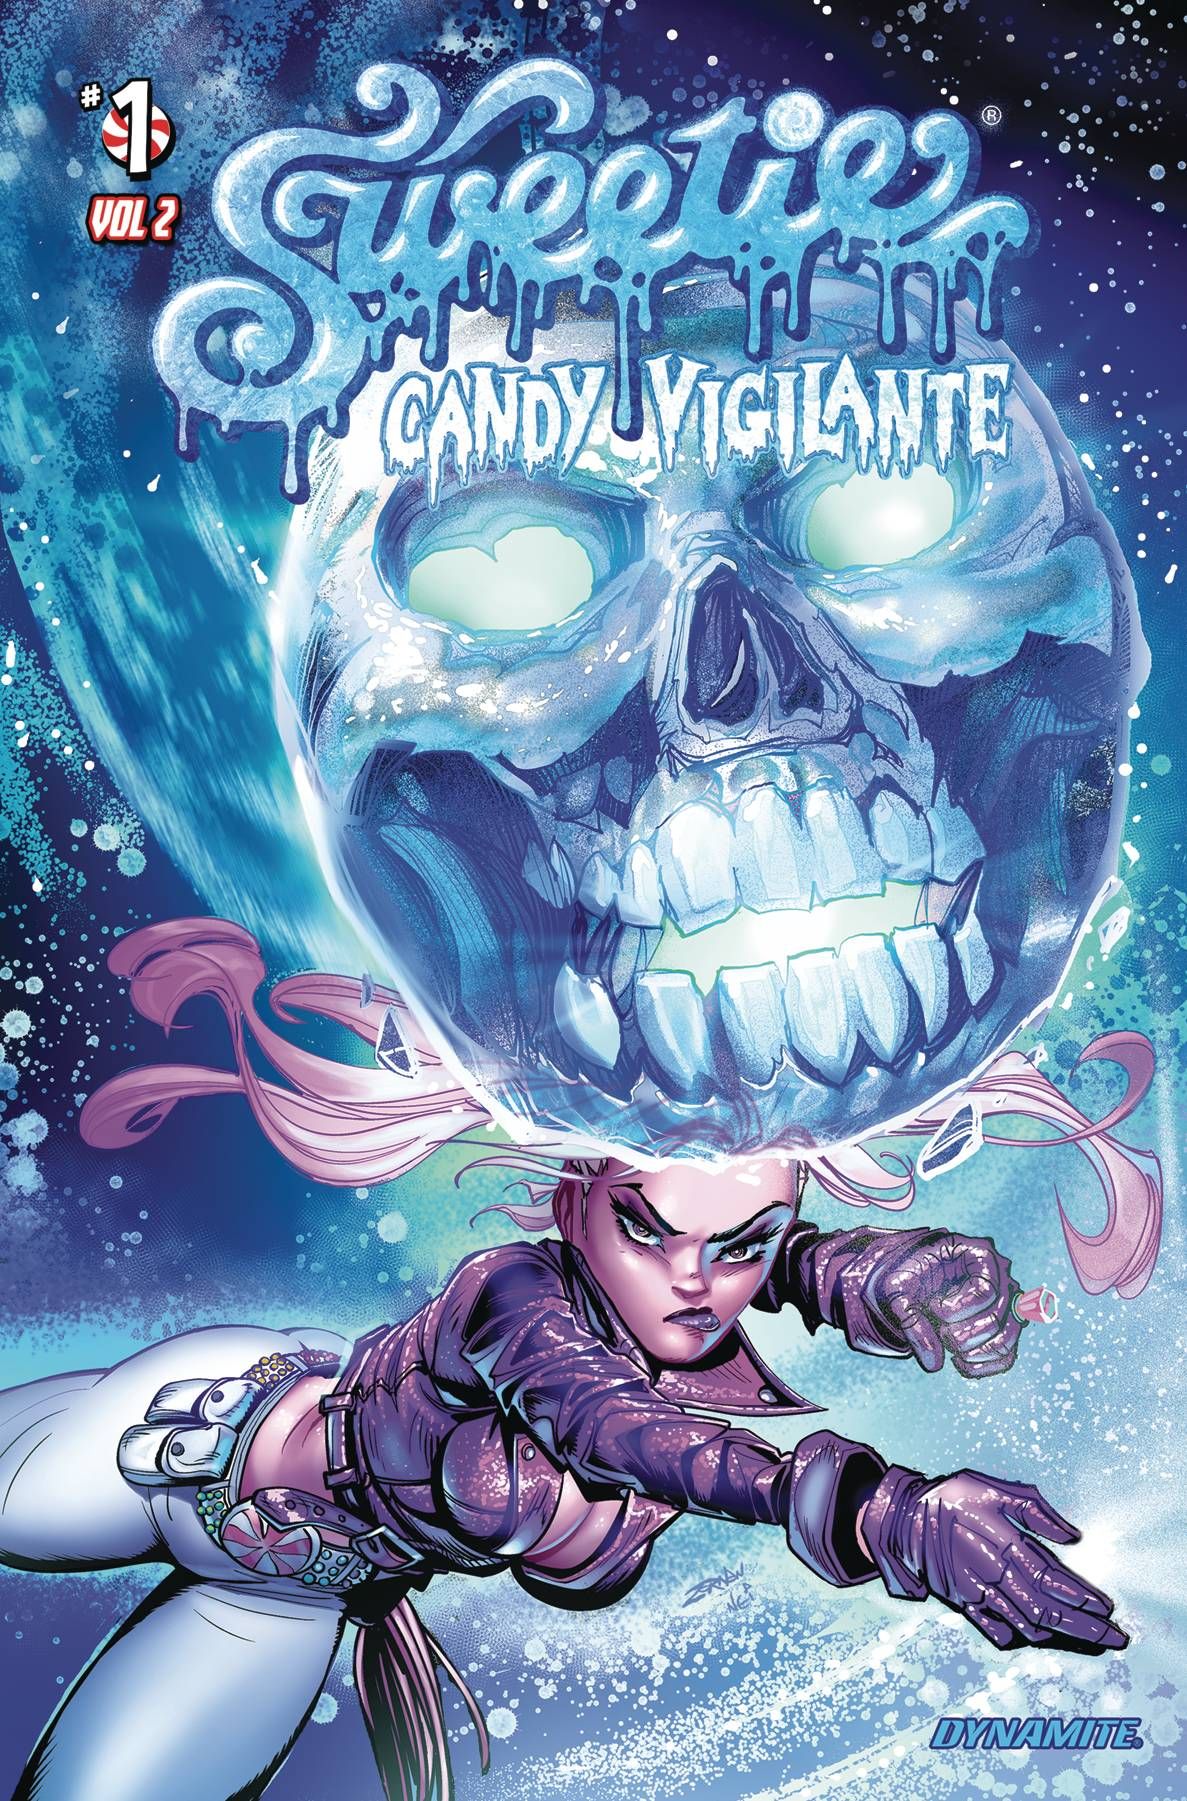 Sweetie Candy Vigilante Vol 2 #1 Comic